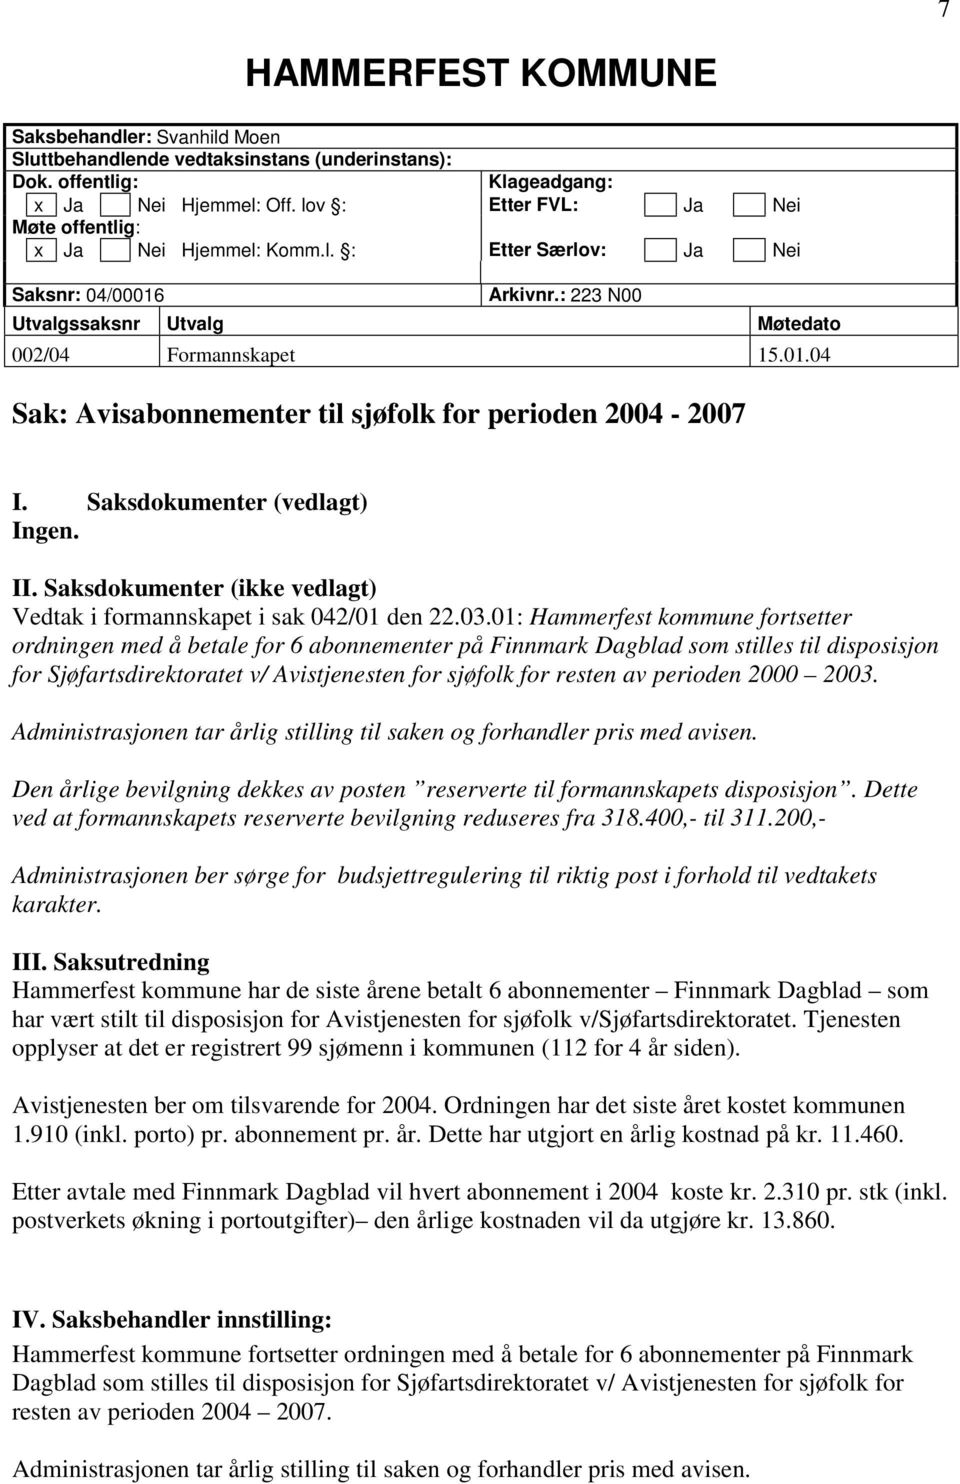 Saksdokumenter (vedlagt) Ingen. II. Saksdokumenter (ikke vedlagt) Vedtak i formannskapet i sak 042/01 den 22.03.